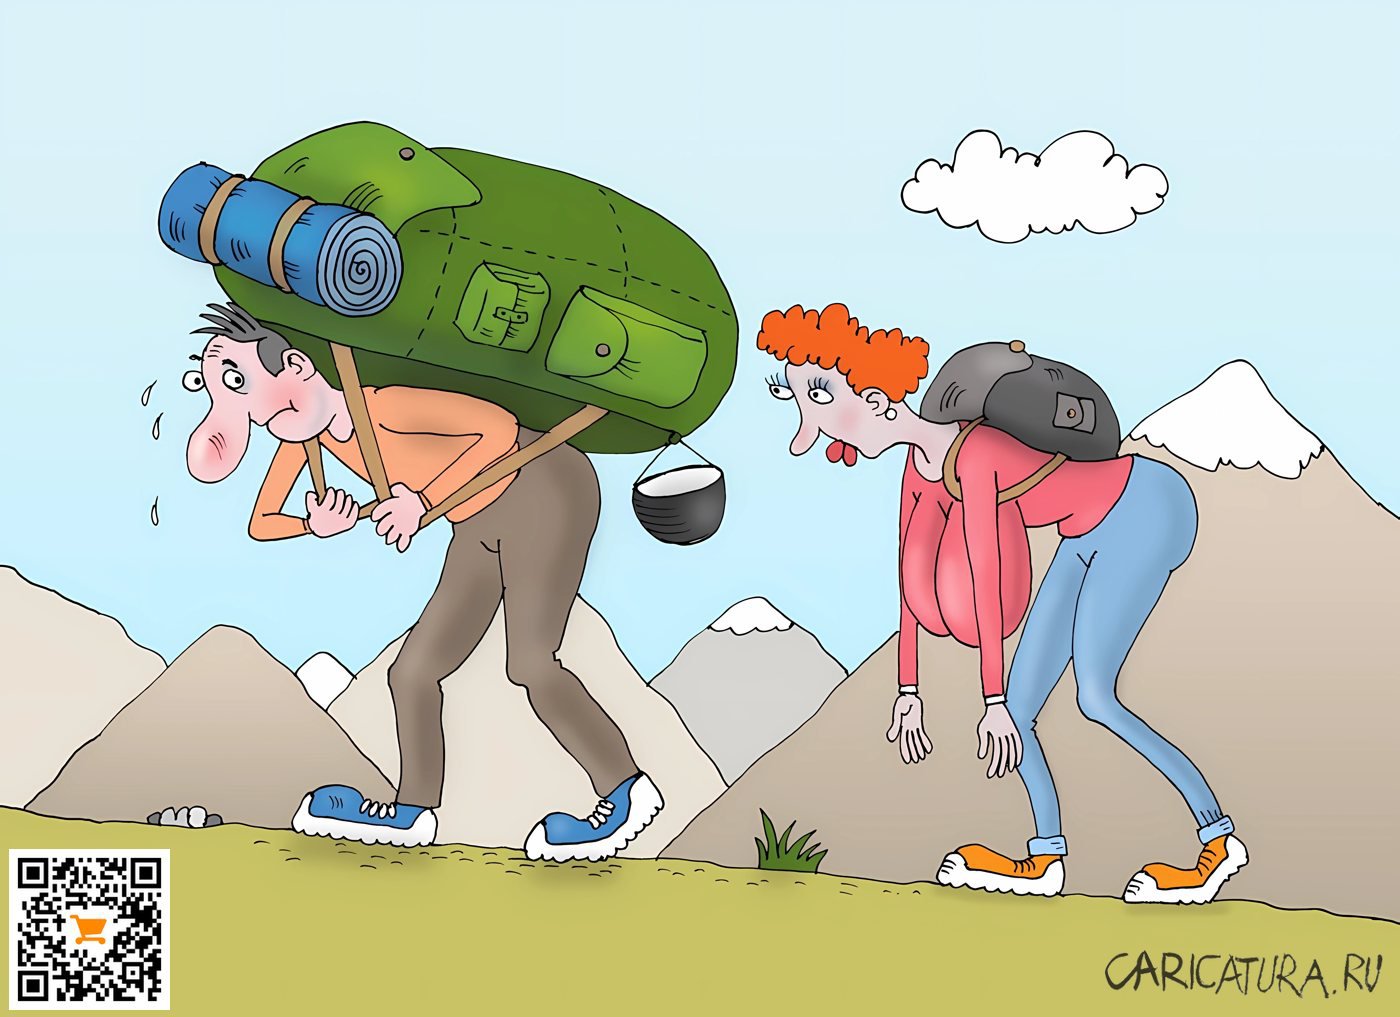 Карикатура "Поход", Валерий Тарасенко